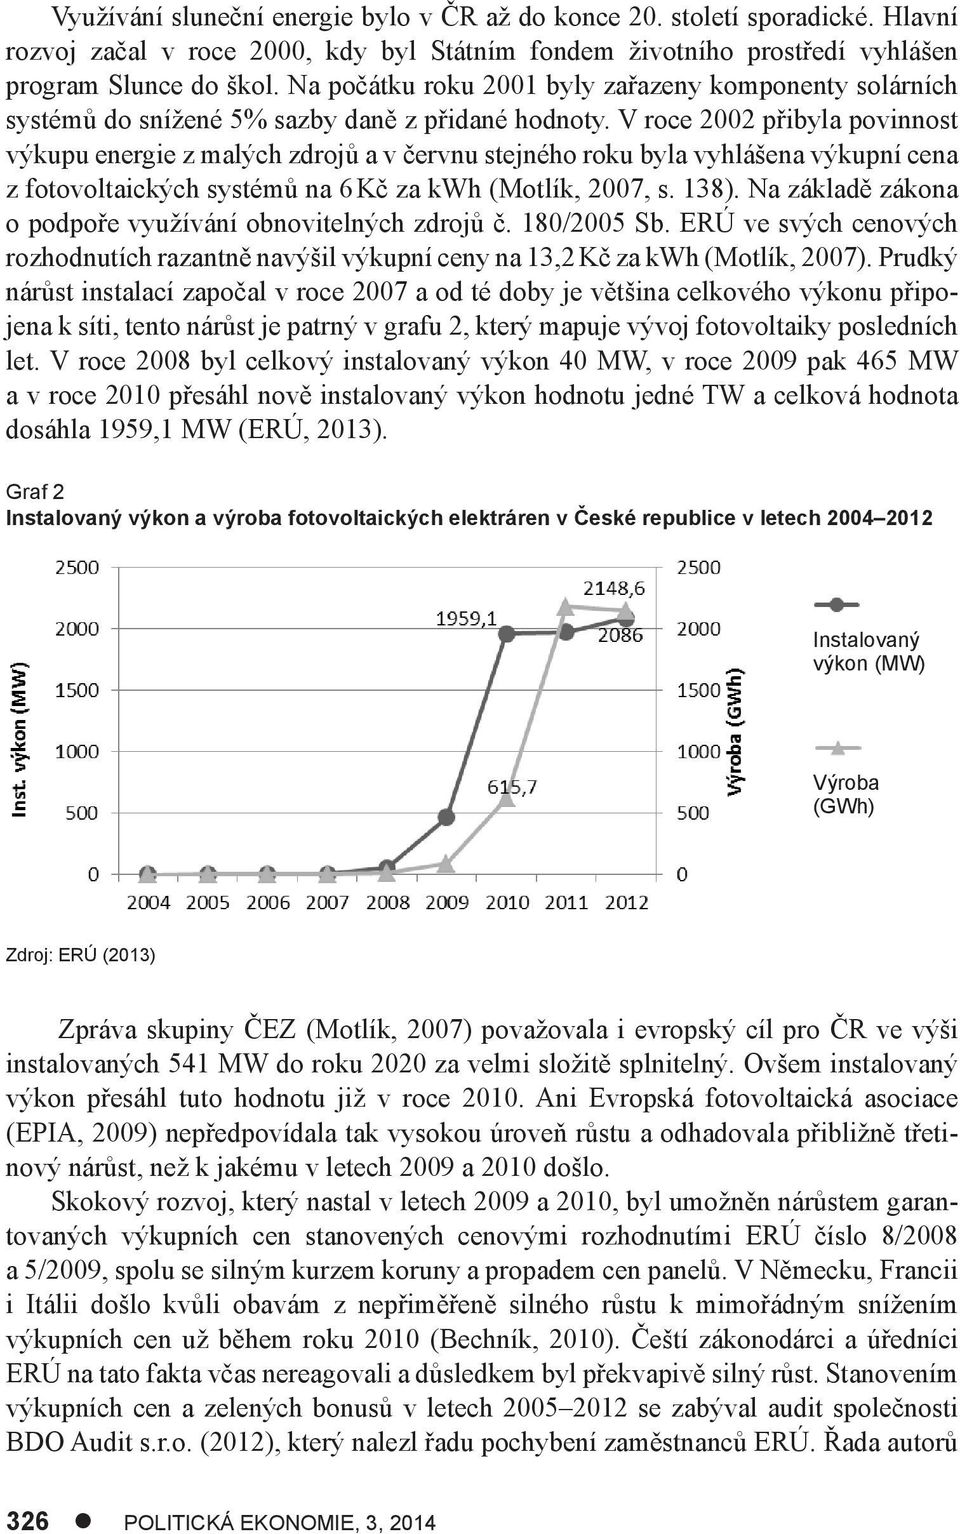 V roce 2002 přibyla povinnost výkupu energie z malých zdrojů a v červnu stejného roku byla vyhlášena výkupní cena z fotovoltaických systémů na 6 Kč za kwh (Motlík, 2007, s. 138).